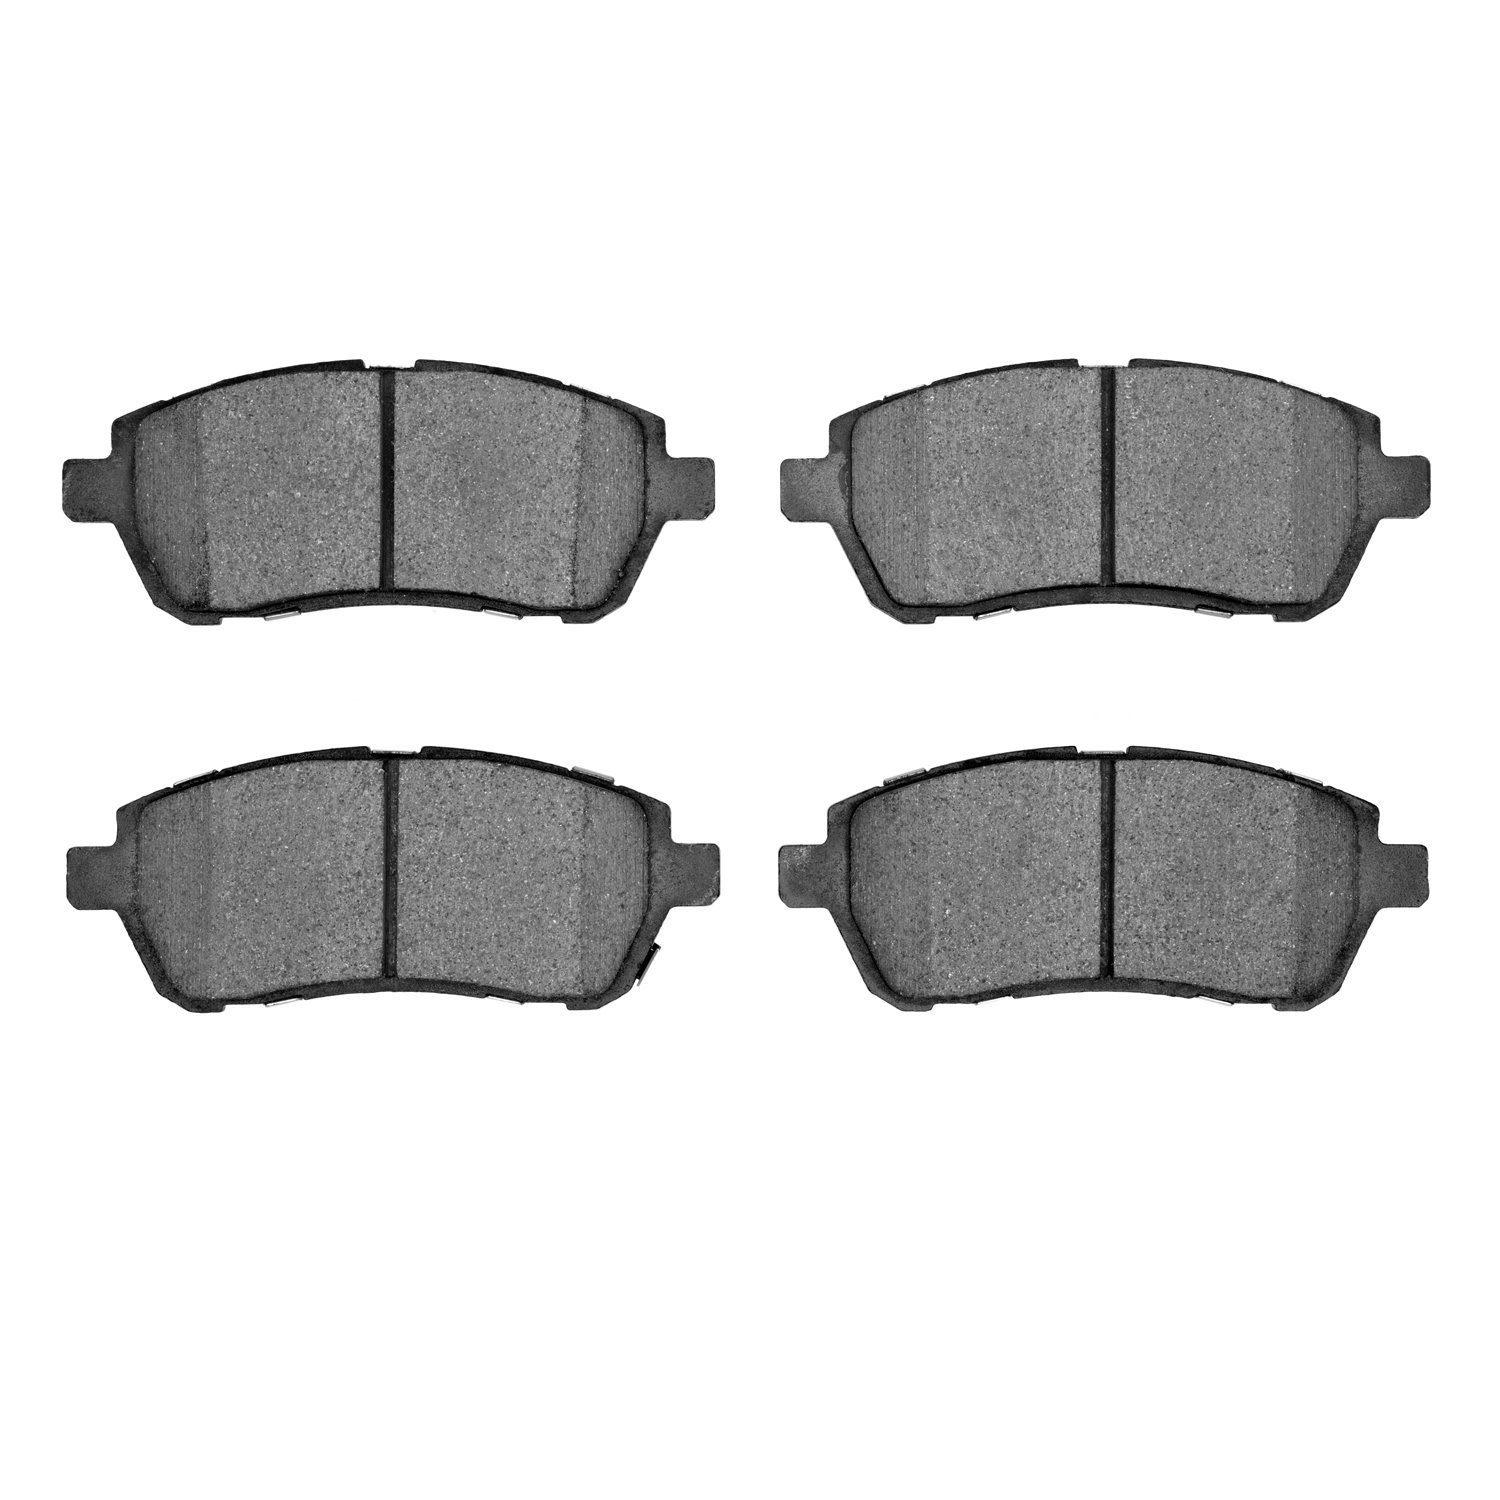 Ceramic Brake Pads, 2011-2017 Fits Multiple Makes/Models, Position: Front